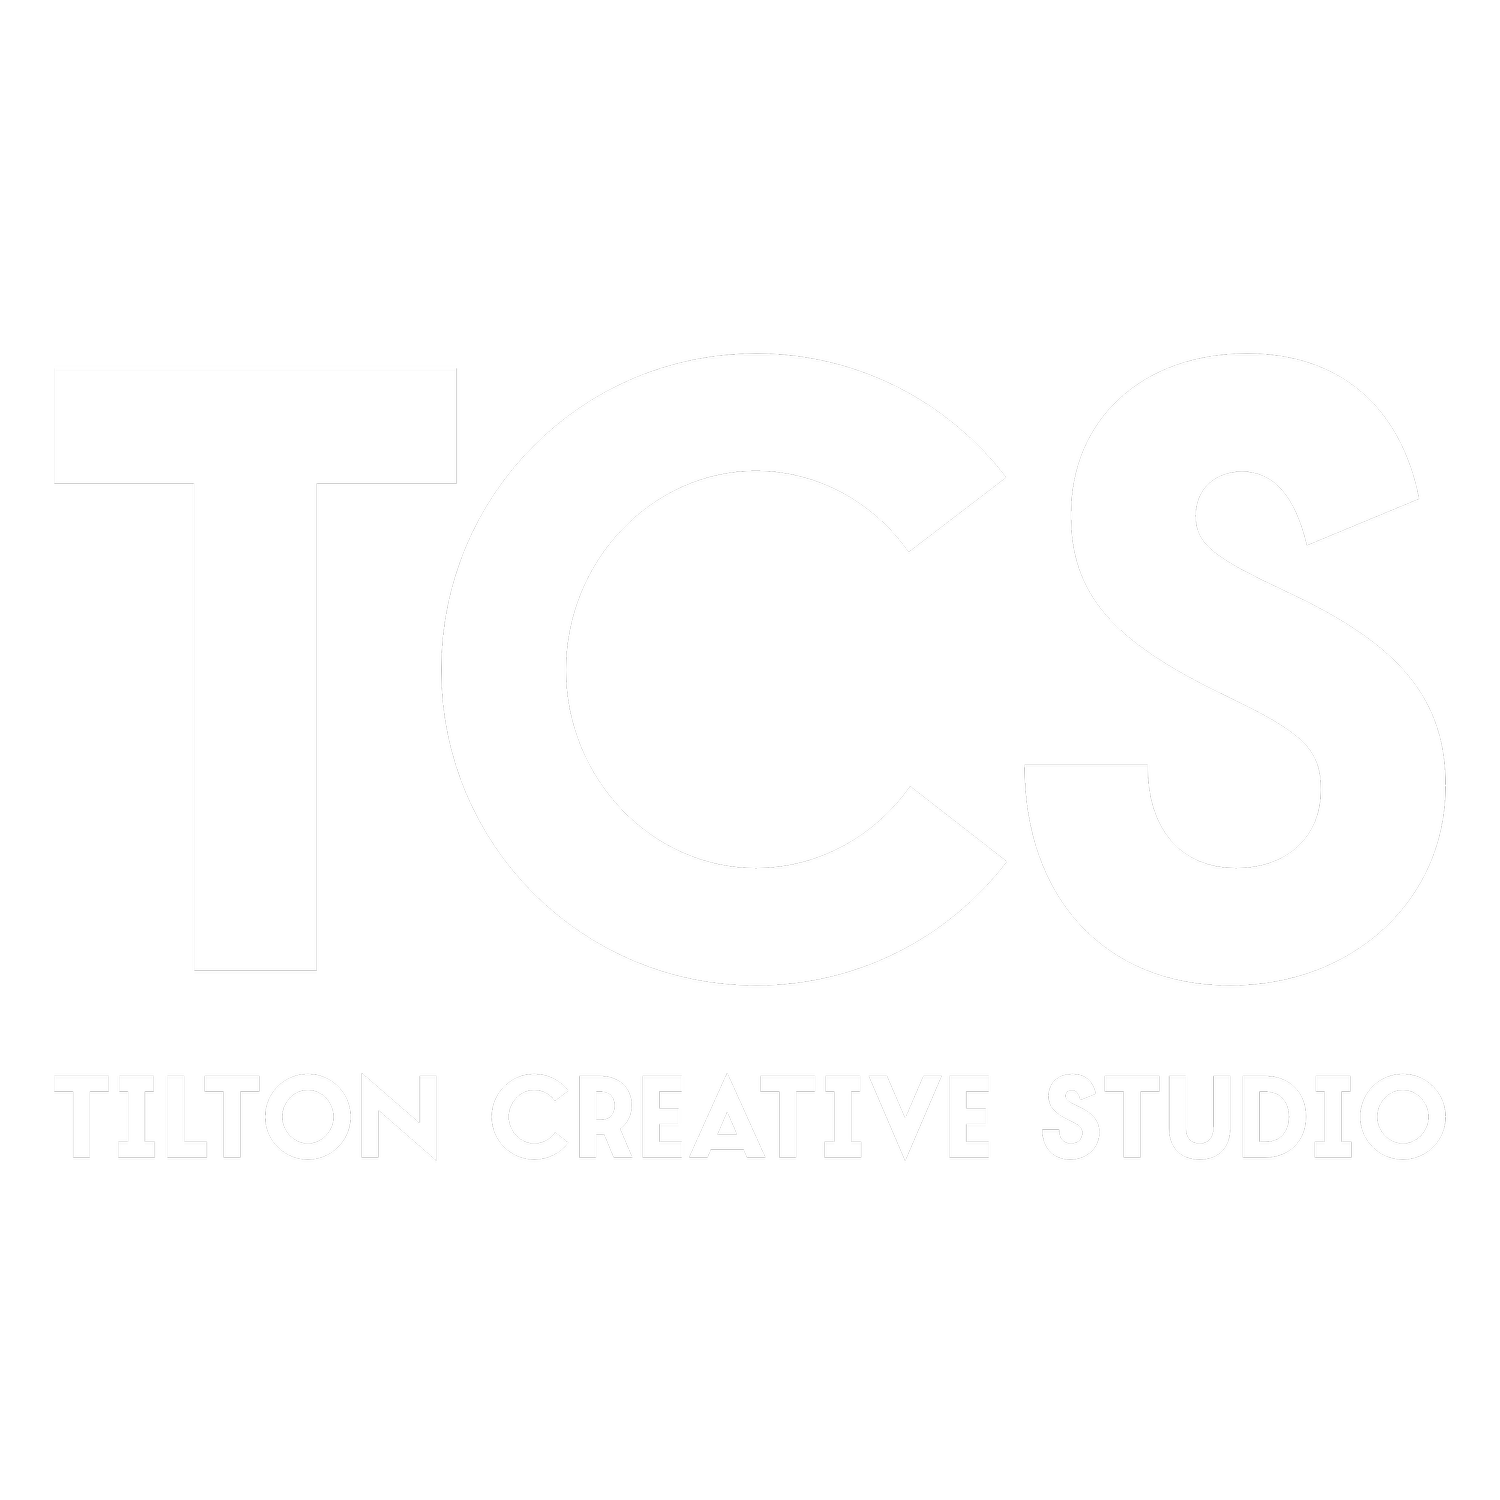 Tilton Creative Studio